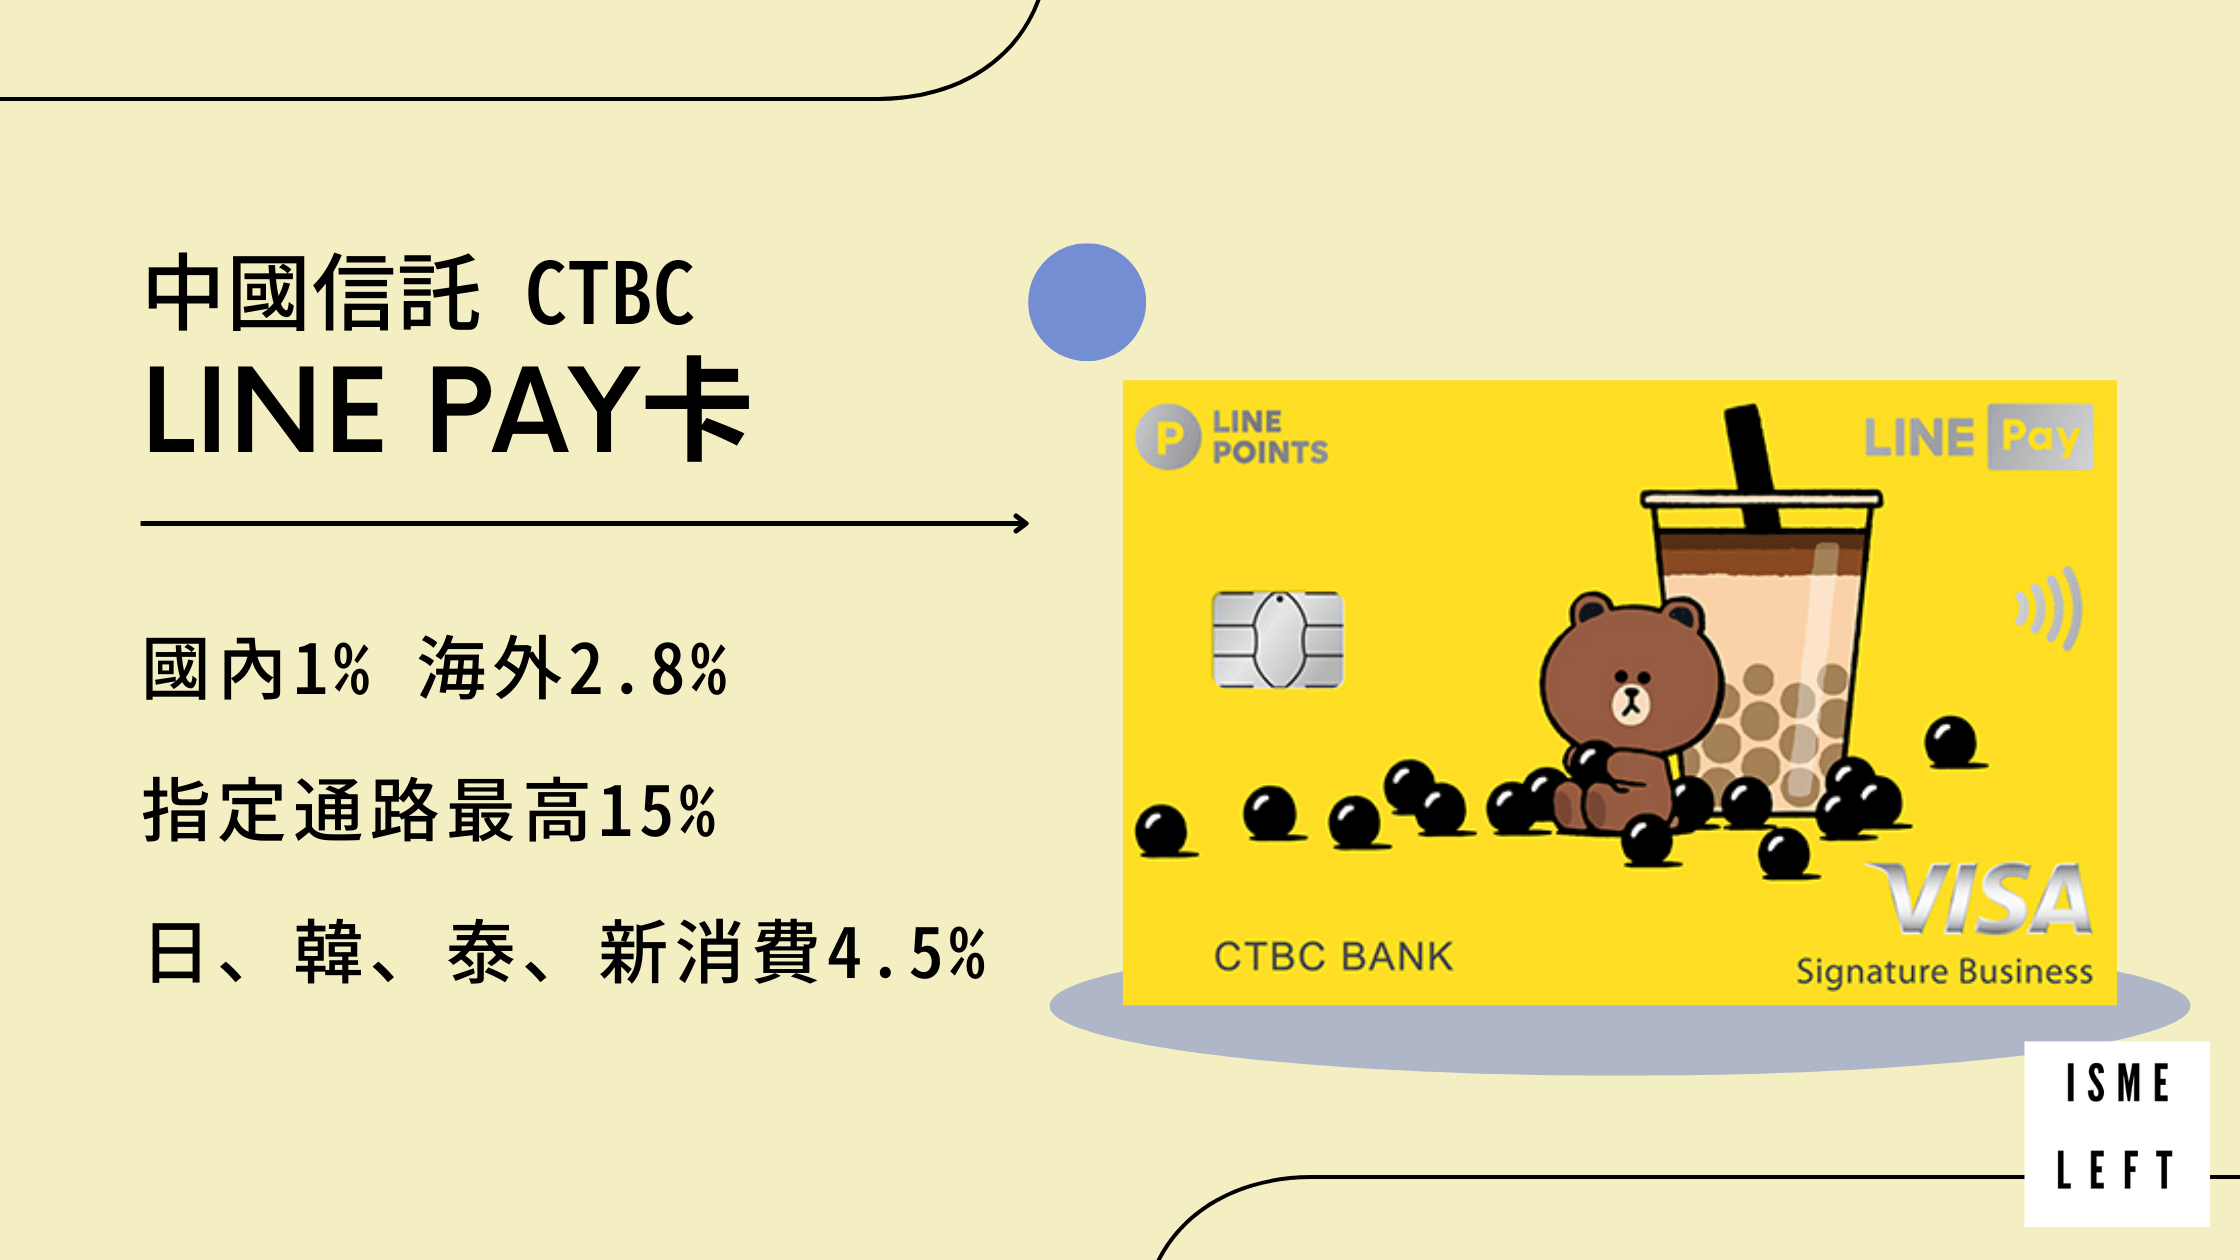 中國信託line pay卡